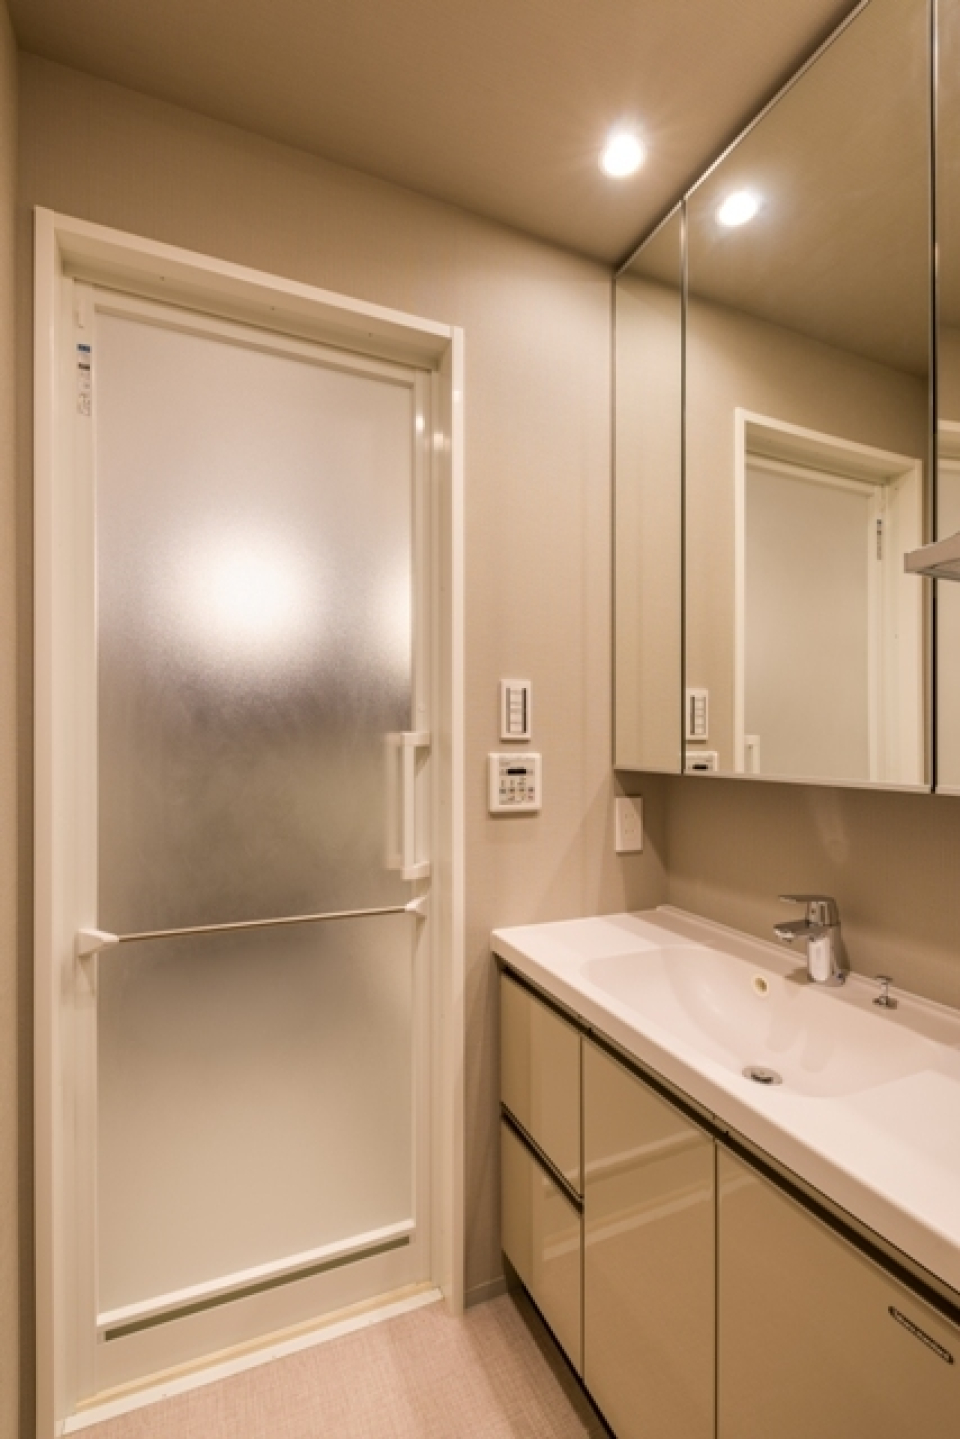 独立洗面台は3面の鏡で広々使用できます。
※写真は同タイプ住戸です。